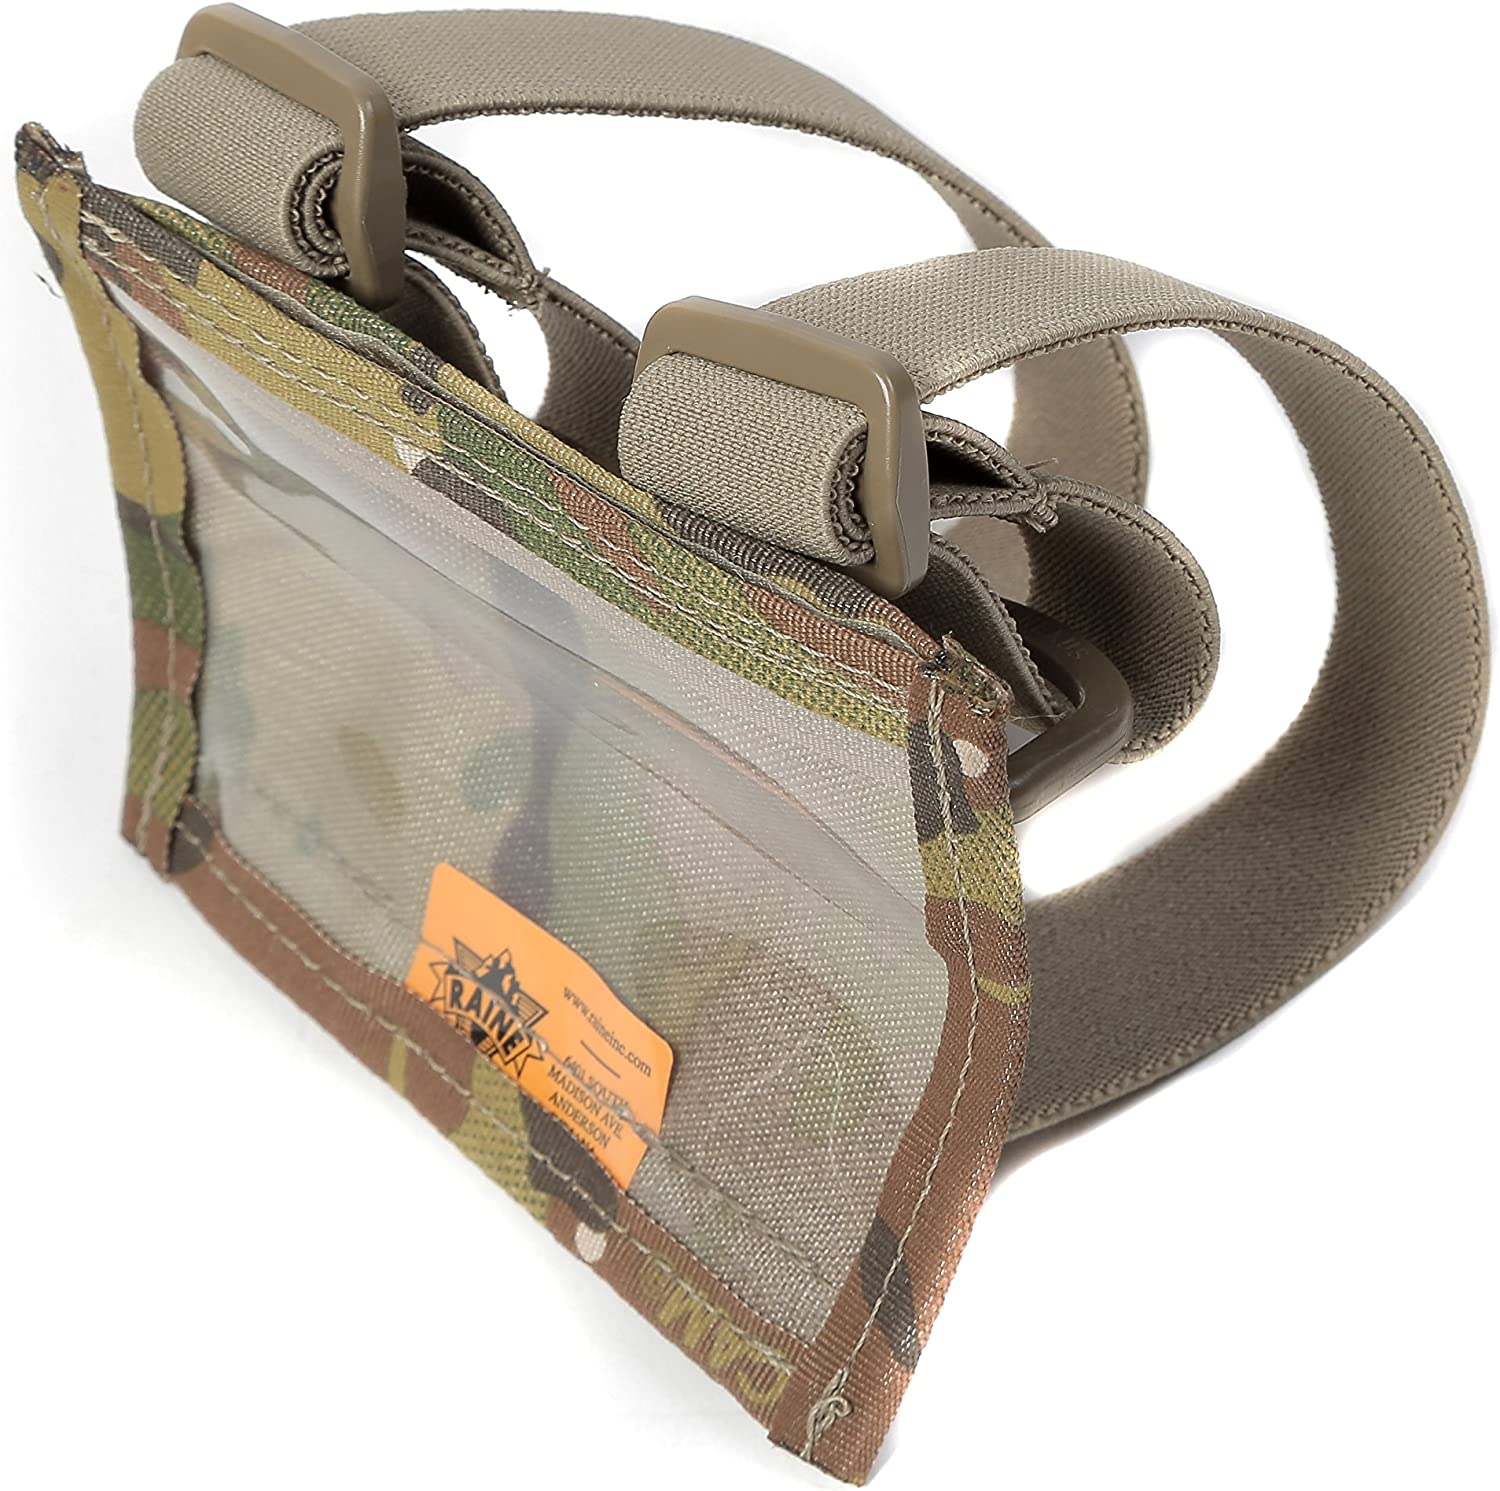 Raine Tactical Gear – Armband Sleeve – Tactical Gear – Wrist Sleeve – Military ID Card Holder – Military Arm Pouch – Arm Badge Holder